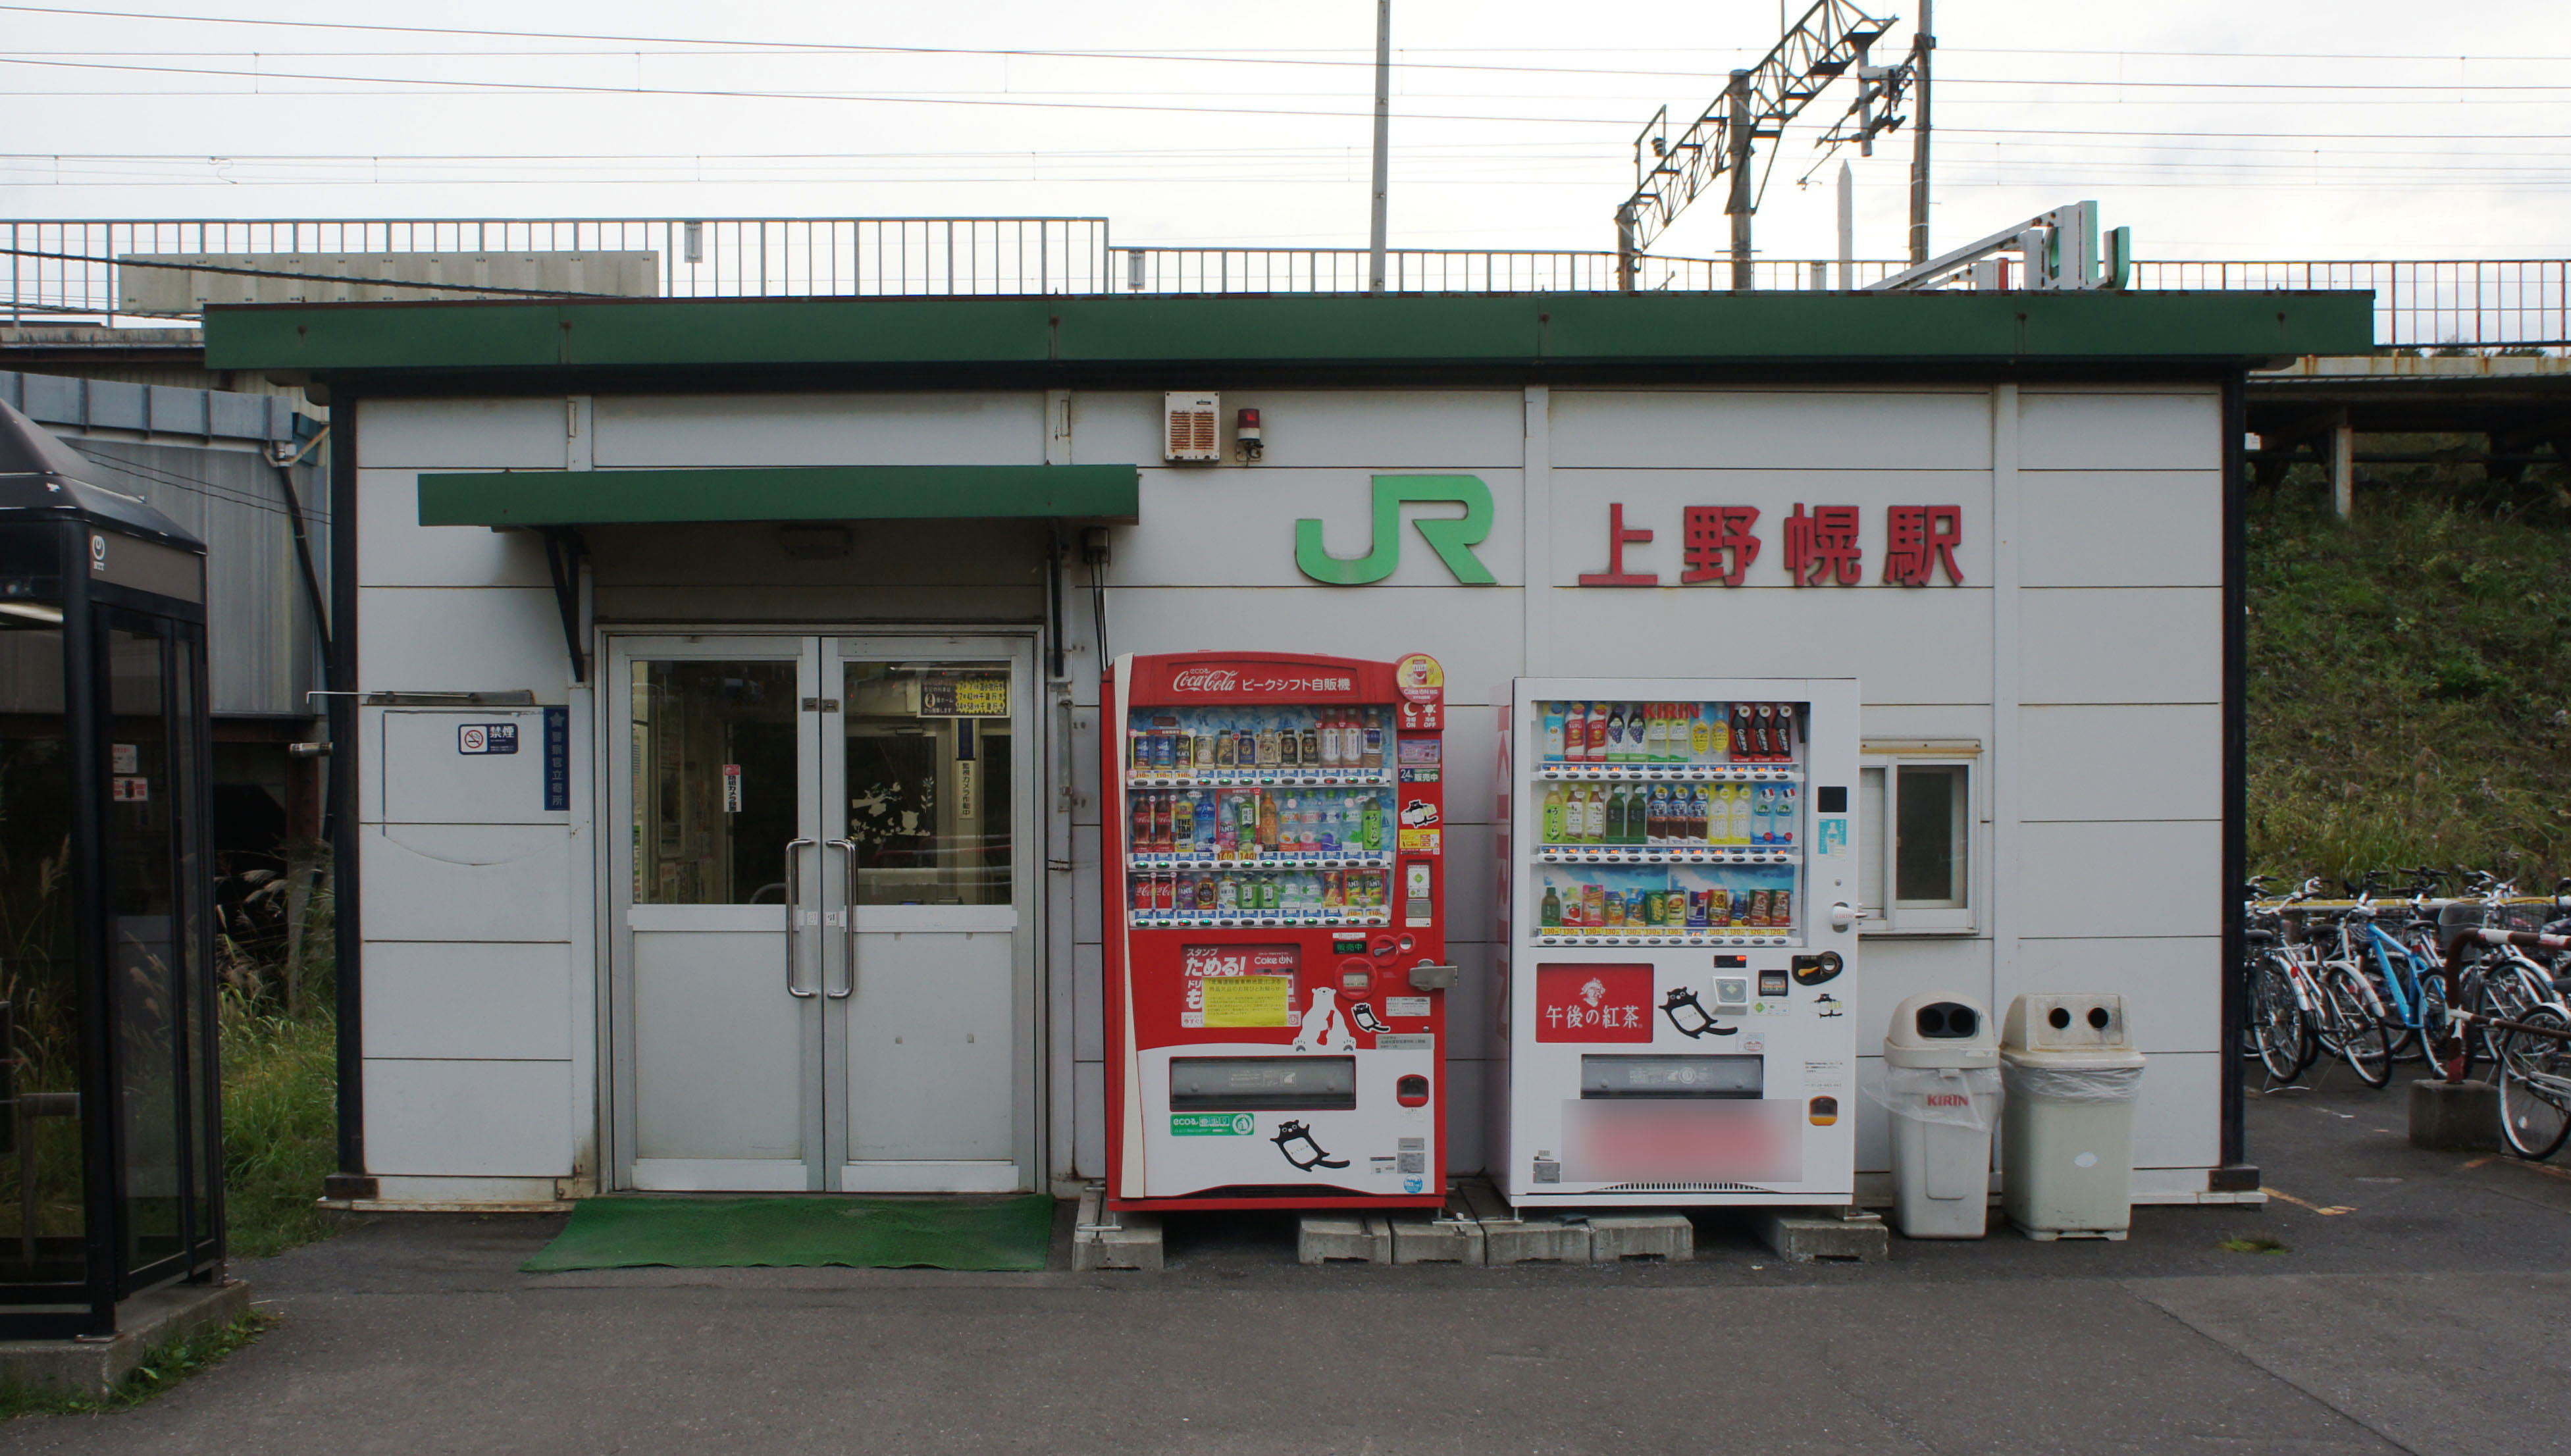 上野幌駅 Wikipedia